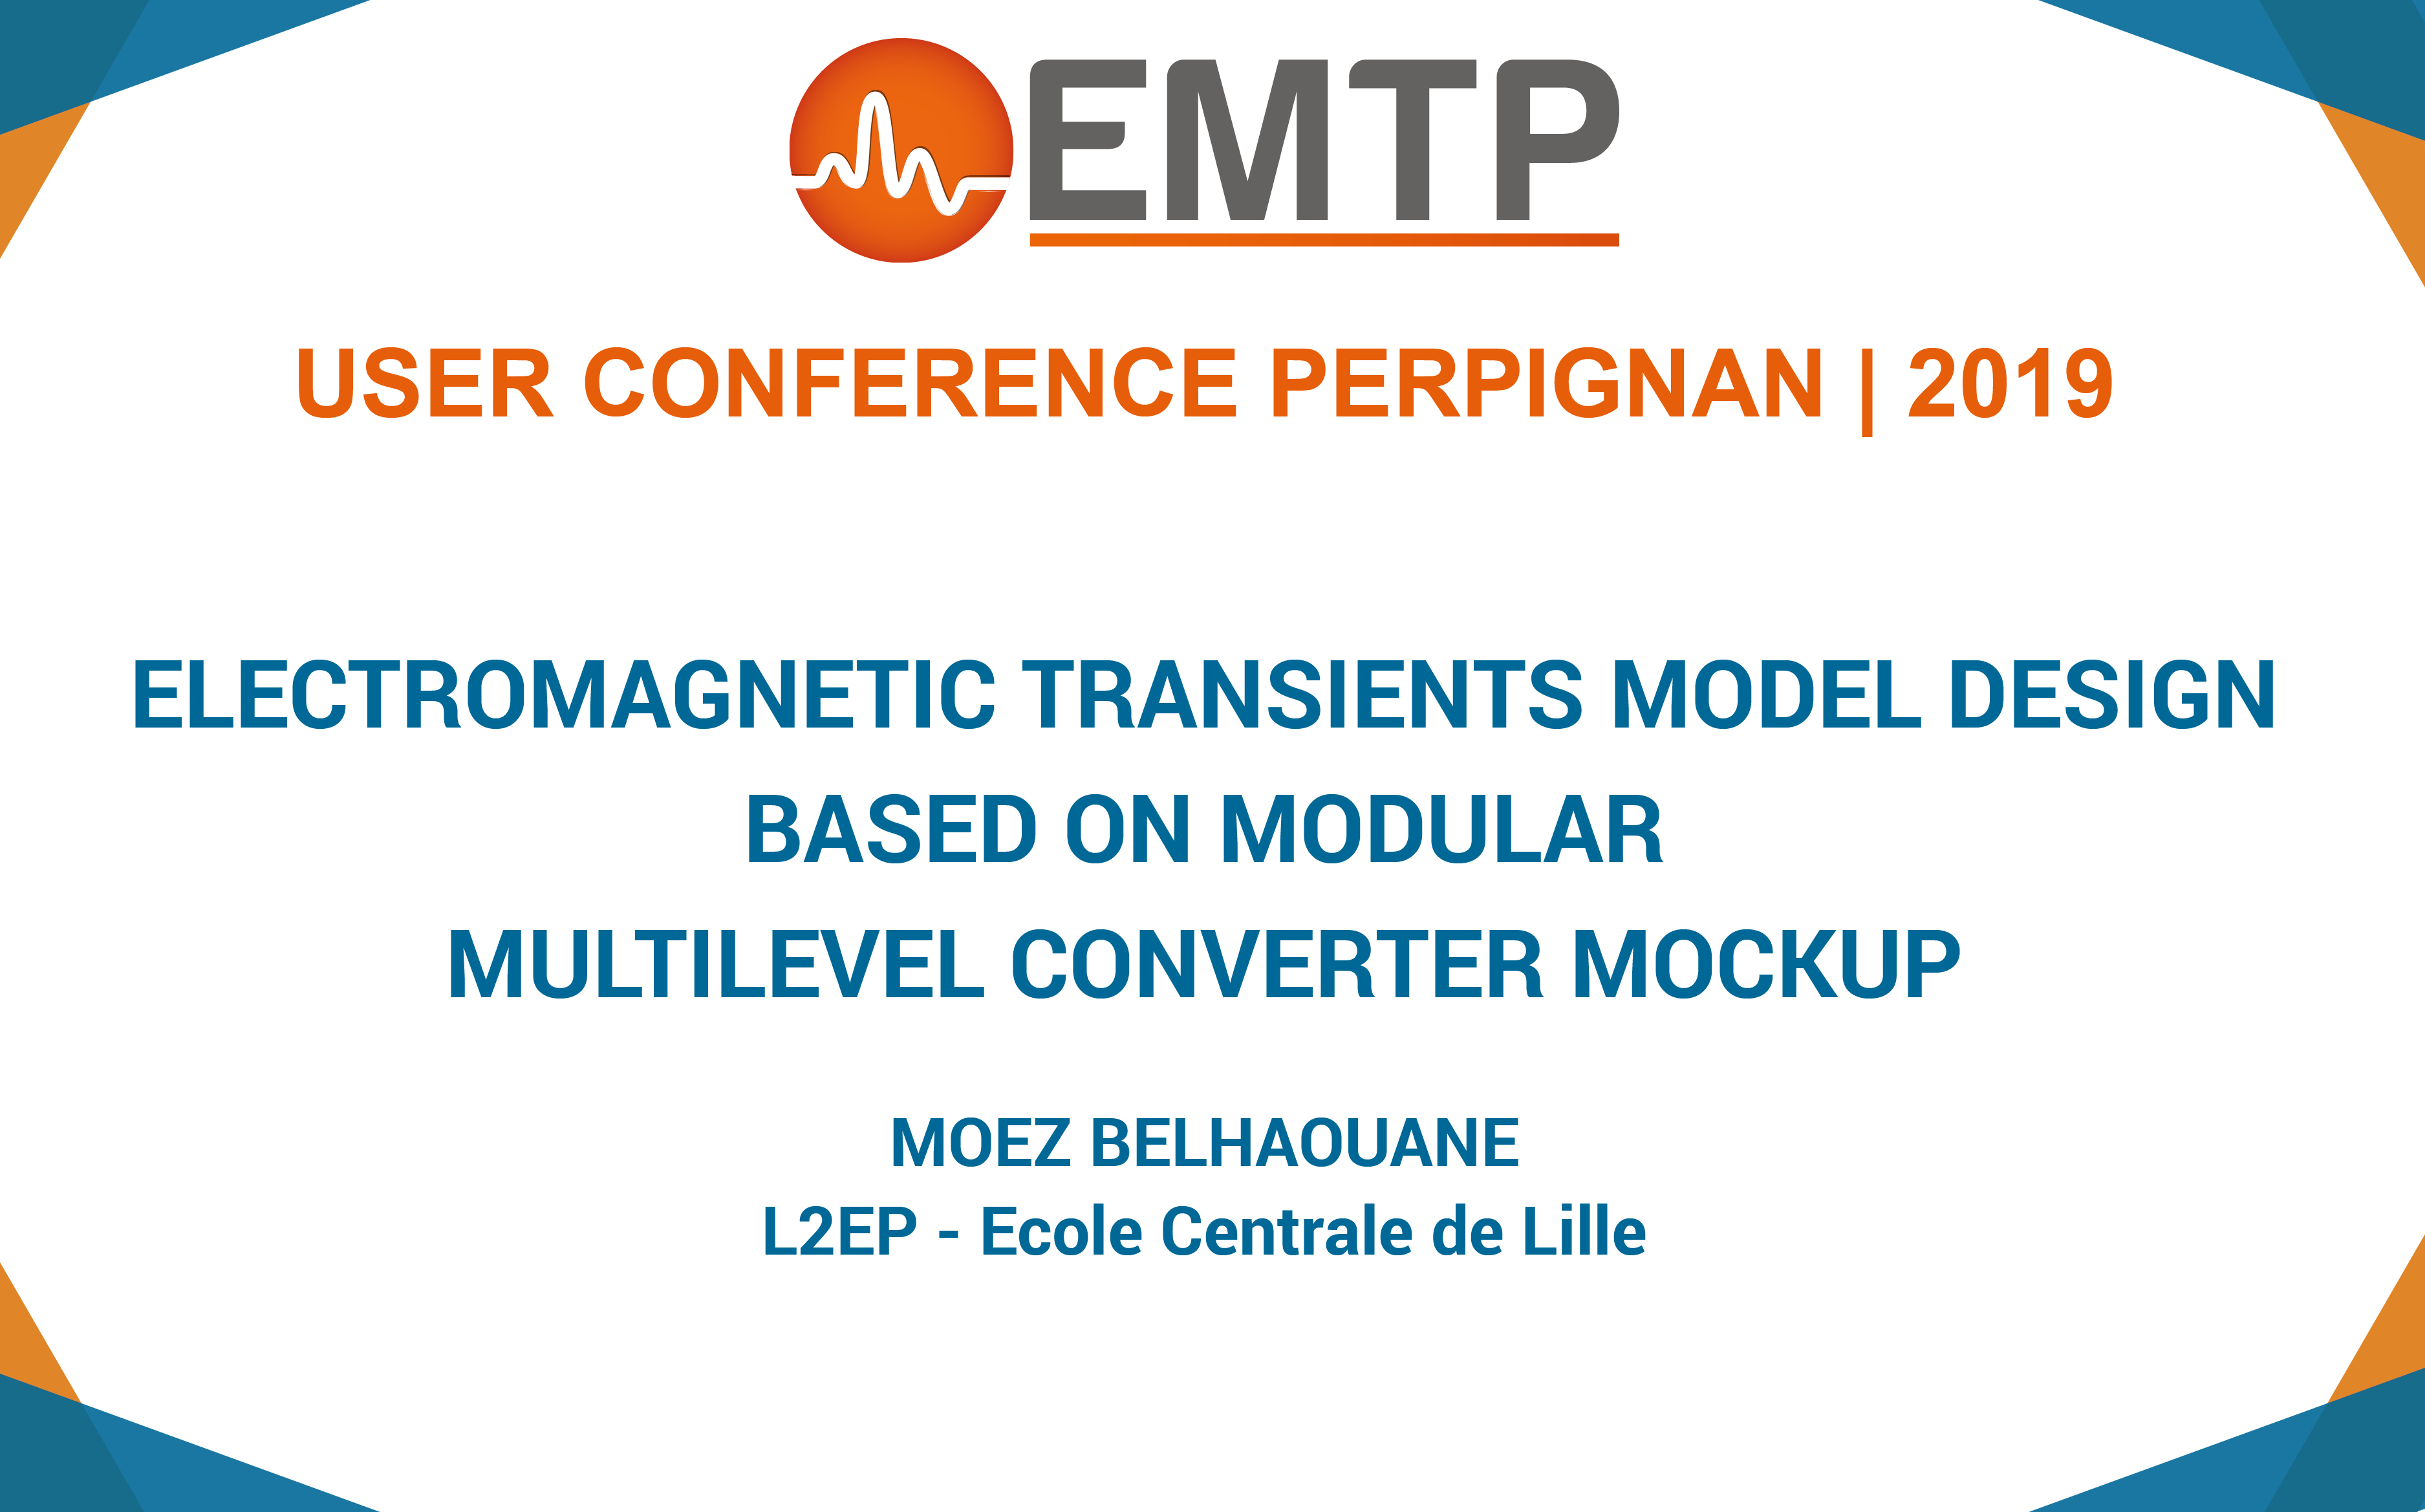 Electromagnetic Transients (EMT) Model Design Based on Modular Multilevel Converter Mockup